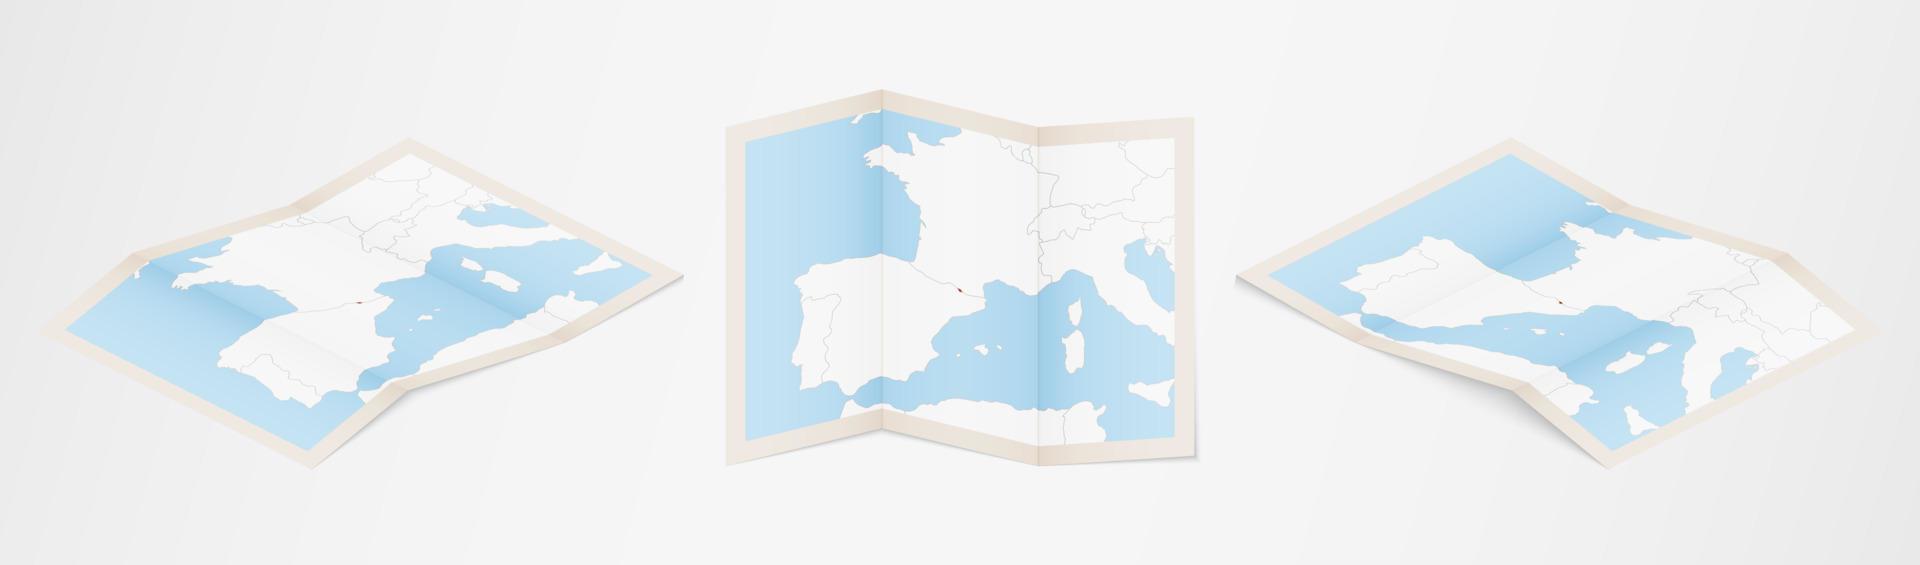 gevouwen kaart van Andorra in drie verschillend versies. vector